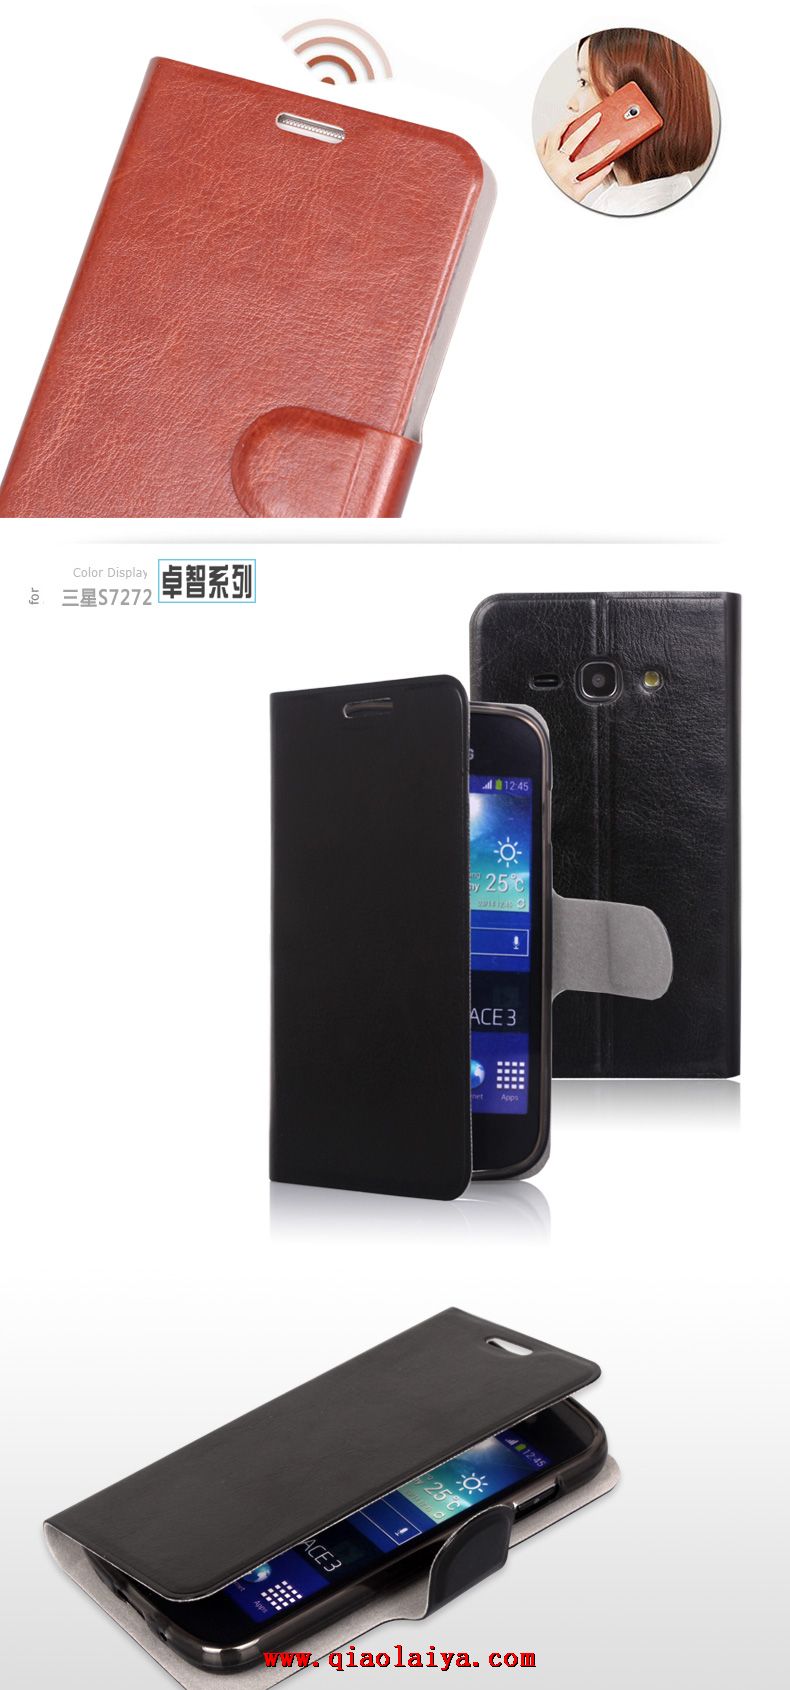 Samsung GT-S7275 étui en cuir de qualité Galaxy Ace 3 Coque de protection noire